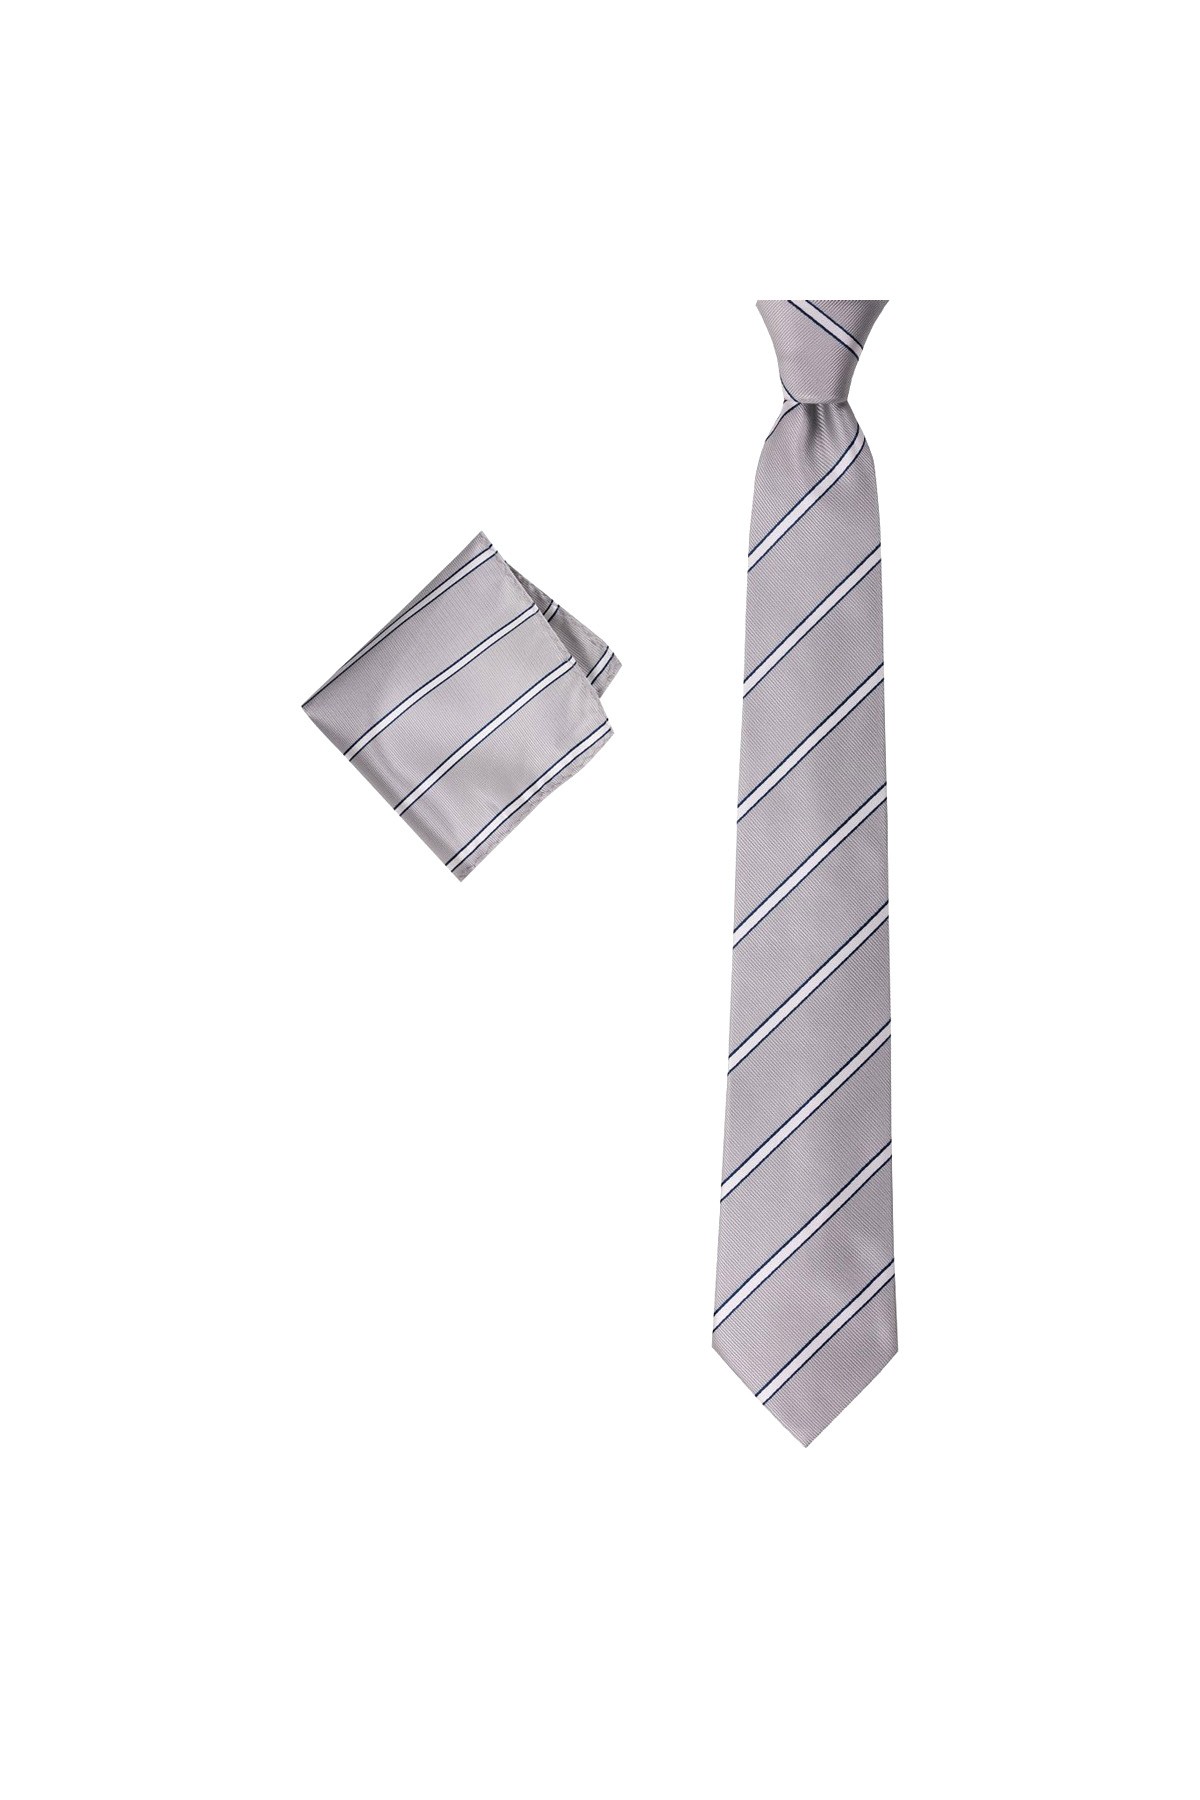 Geniş çizgili 8 cm genişliğinde mendilli kravat